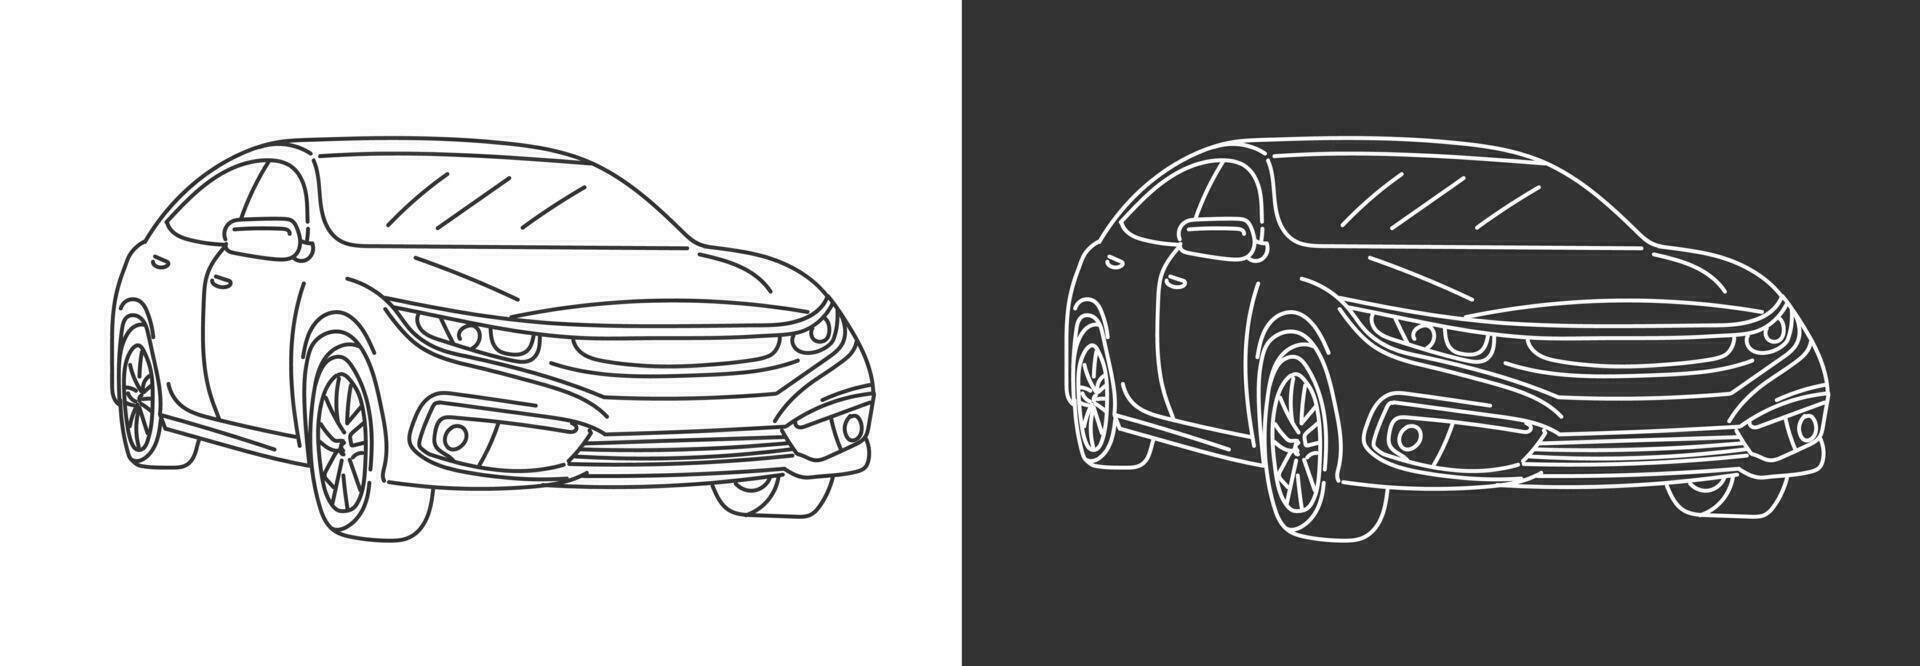 lijn kunst vector illustratie van een modern sport- auto geïsoleerd in zwart en wit